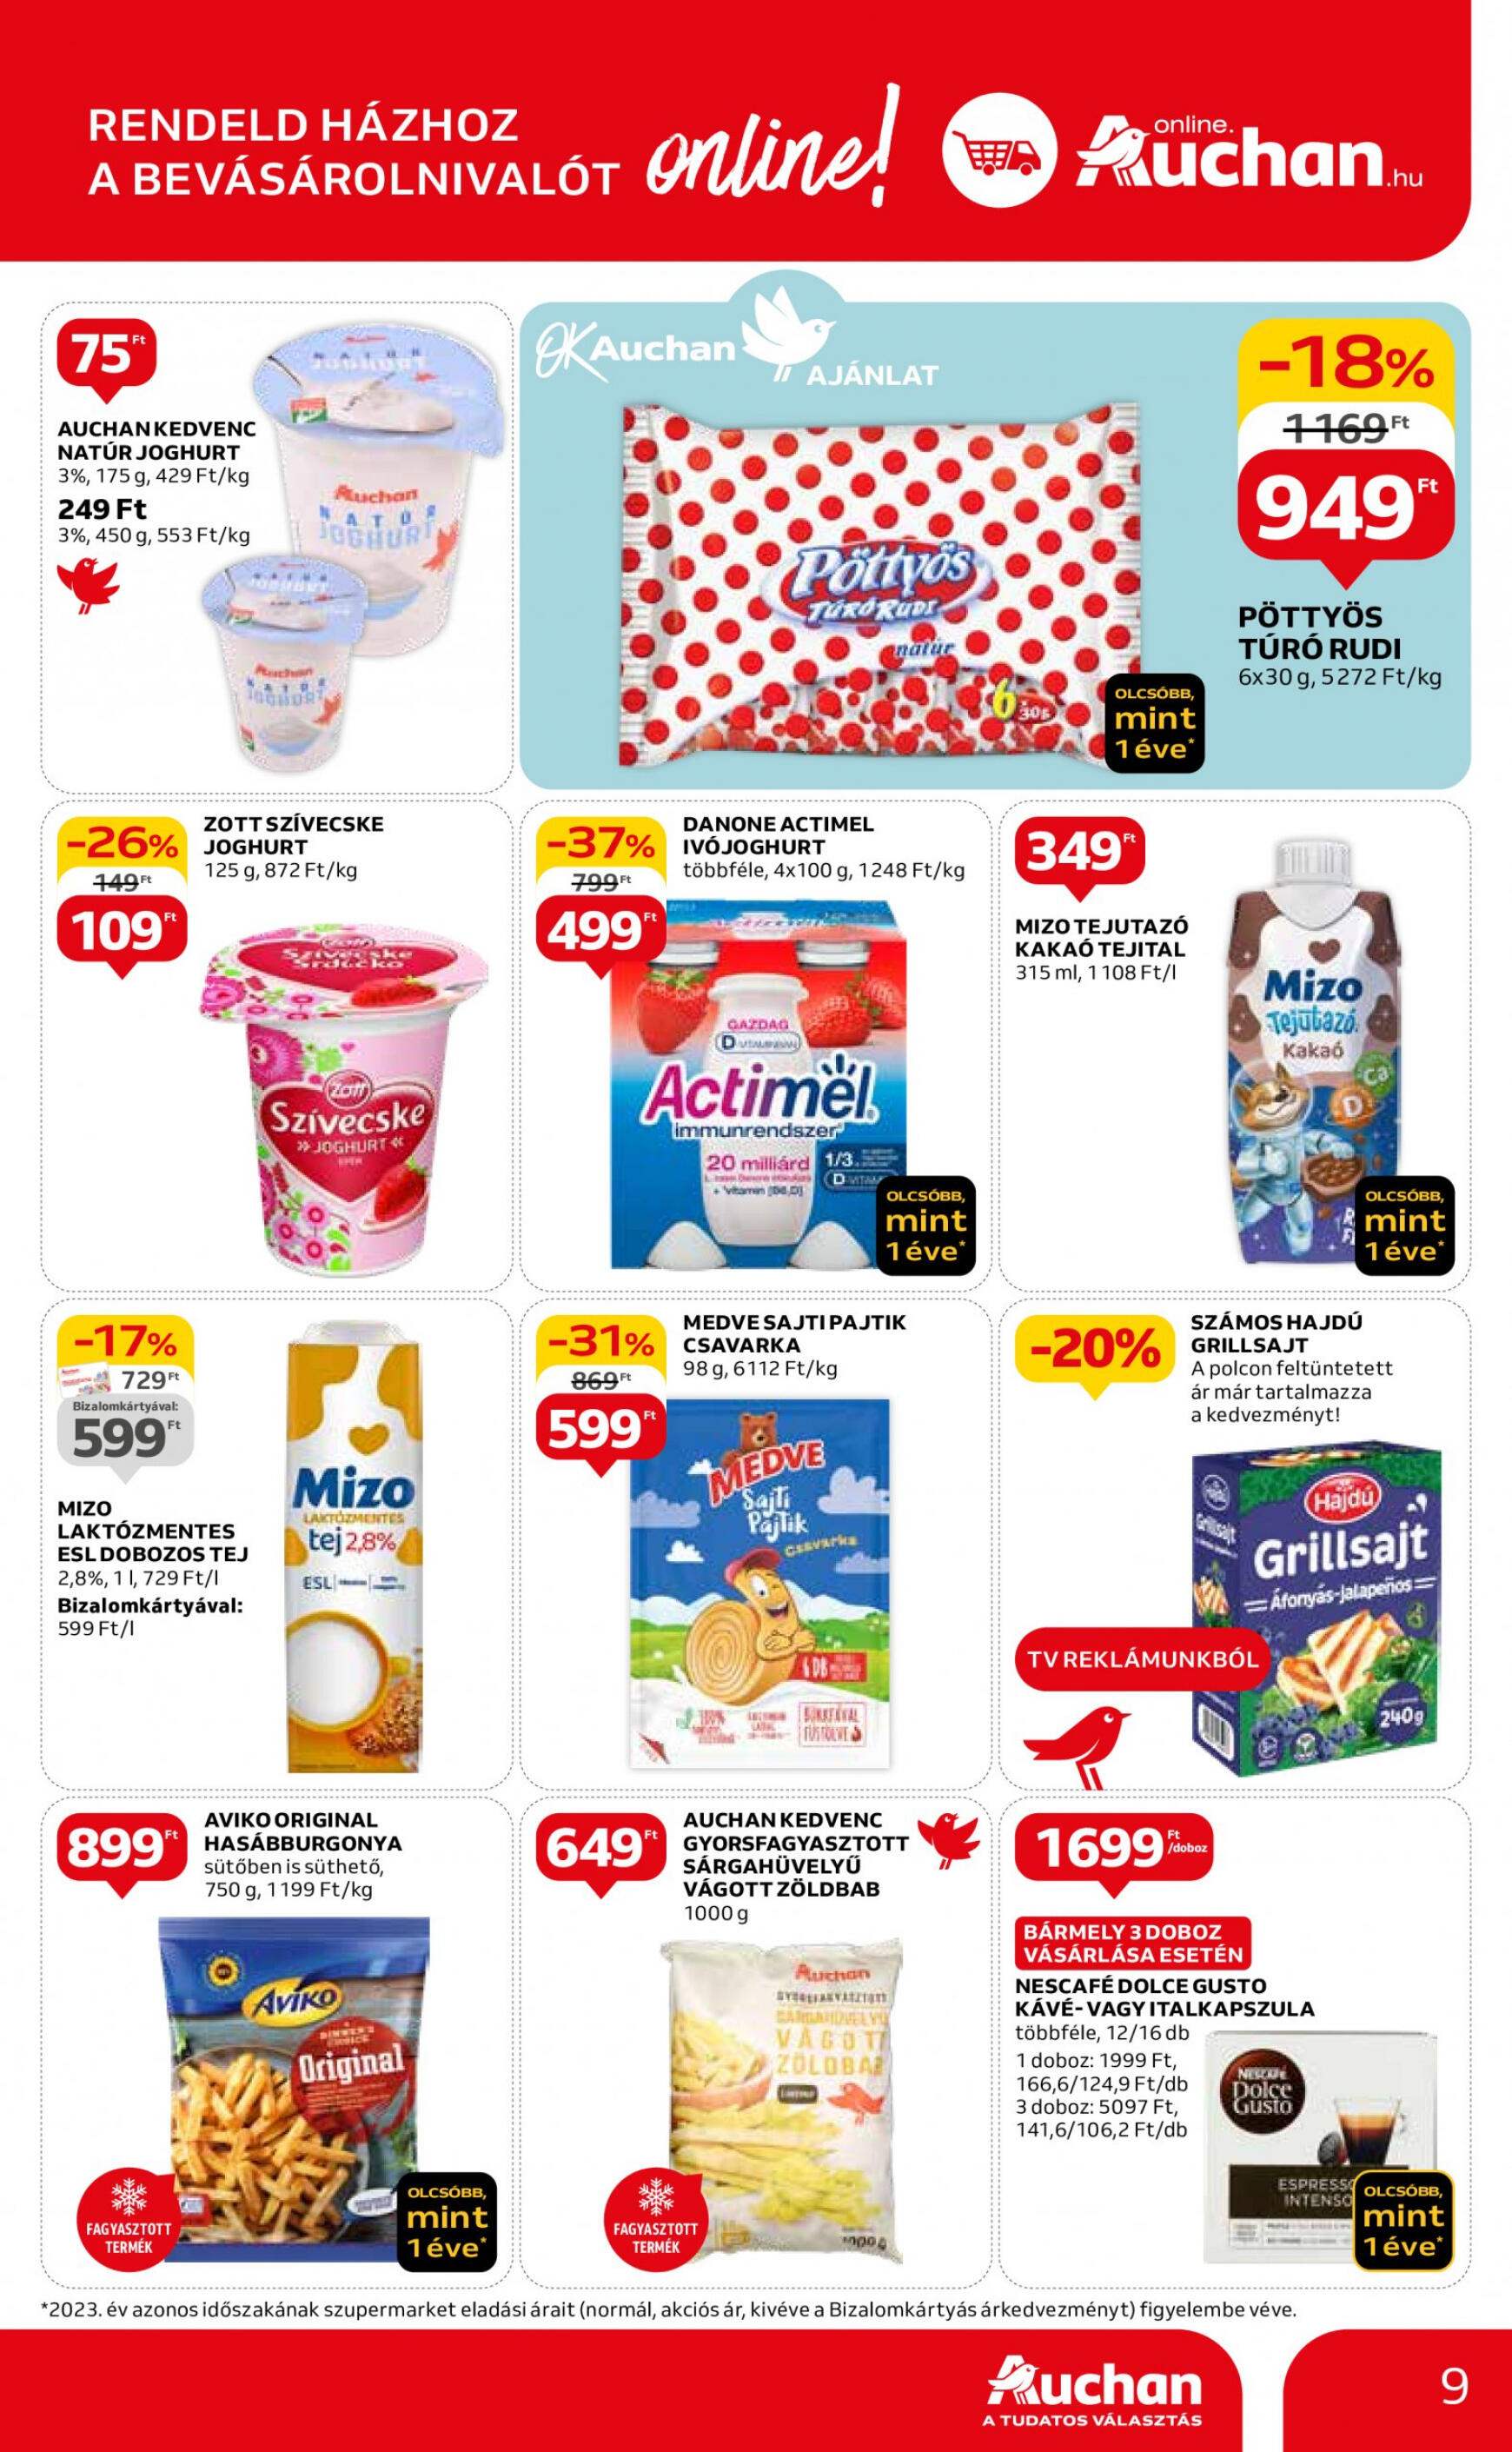 auchan - Aktuális újság Auchan szupermarket 05.16. - 05.22. - page: 9